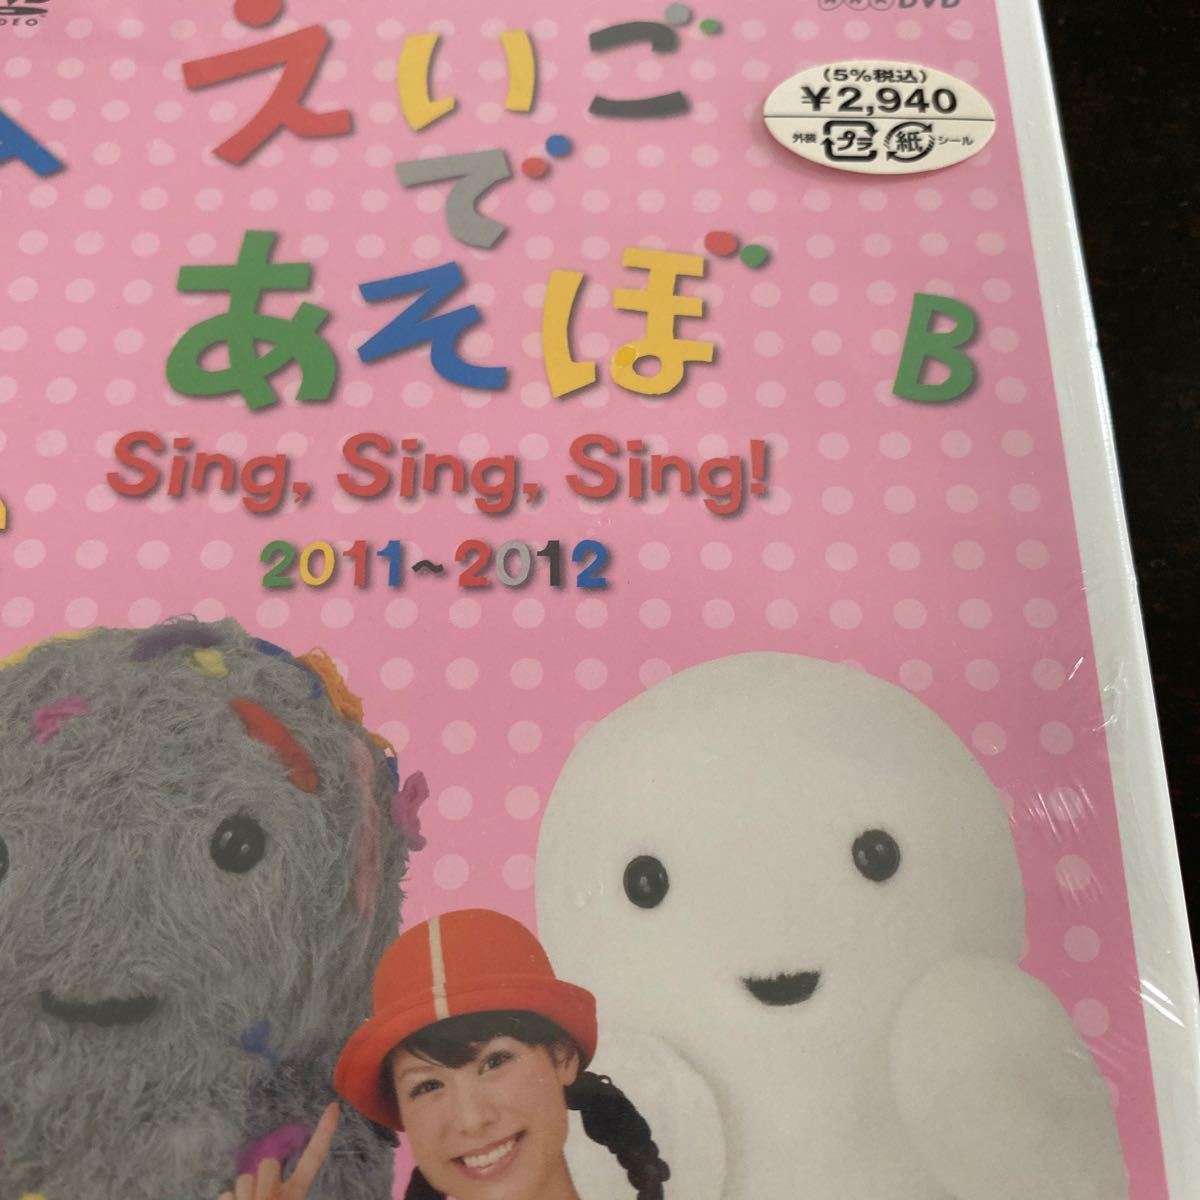 えいごであそぼ SingSingSing!  NHK  DVD 